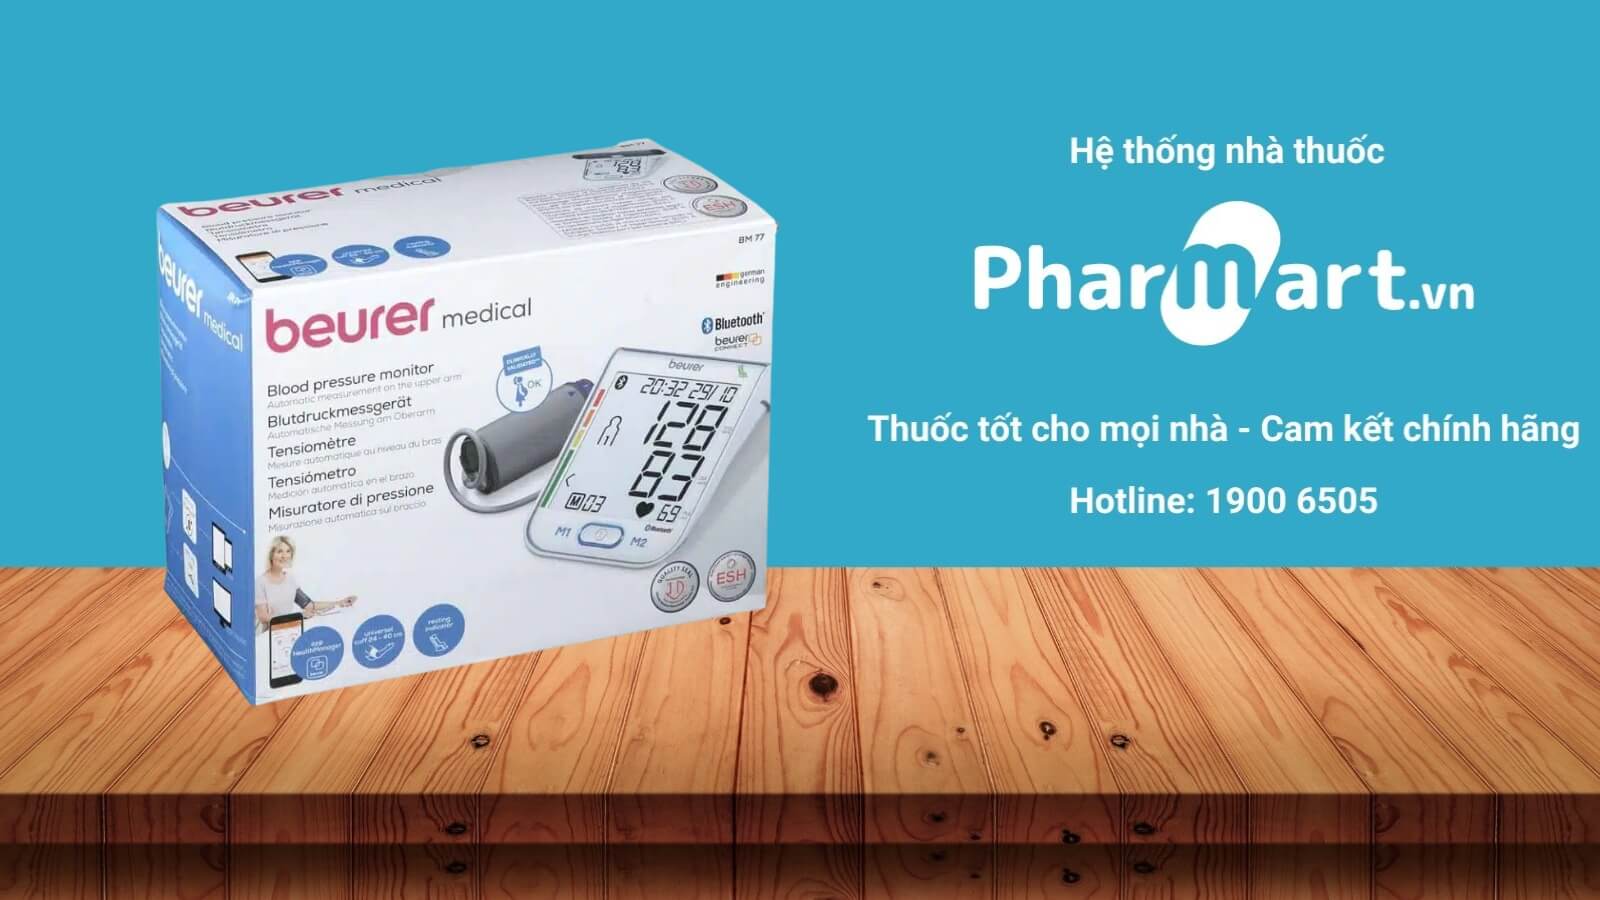 Máy đo huyết áp Beurer BM77 được phân phối chính hãng tại Pharmart.vn